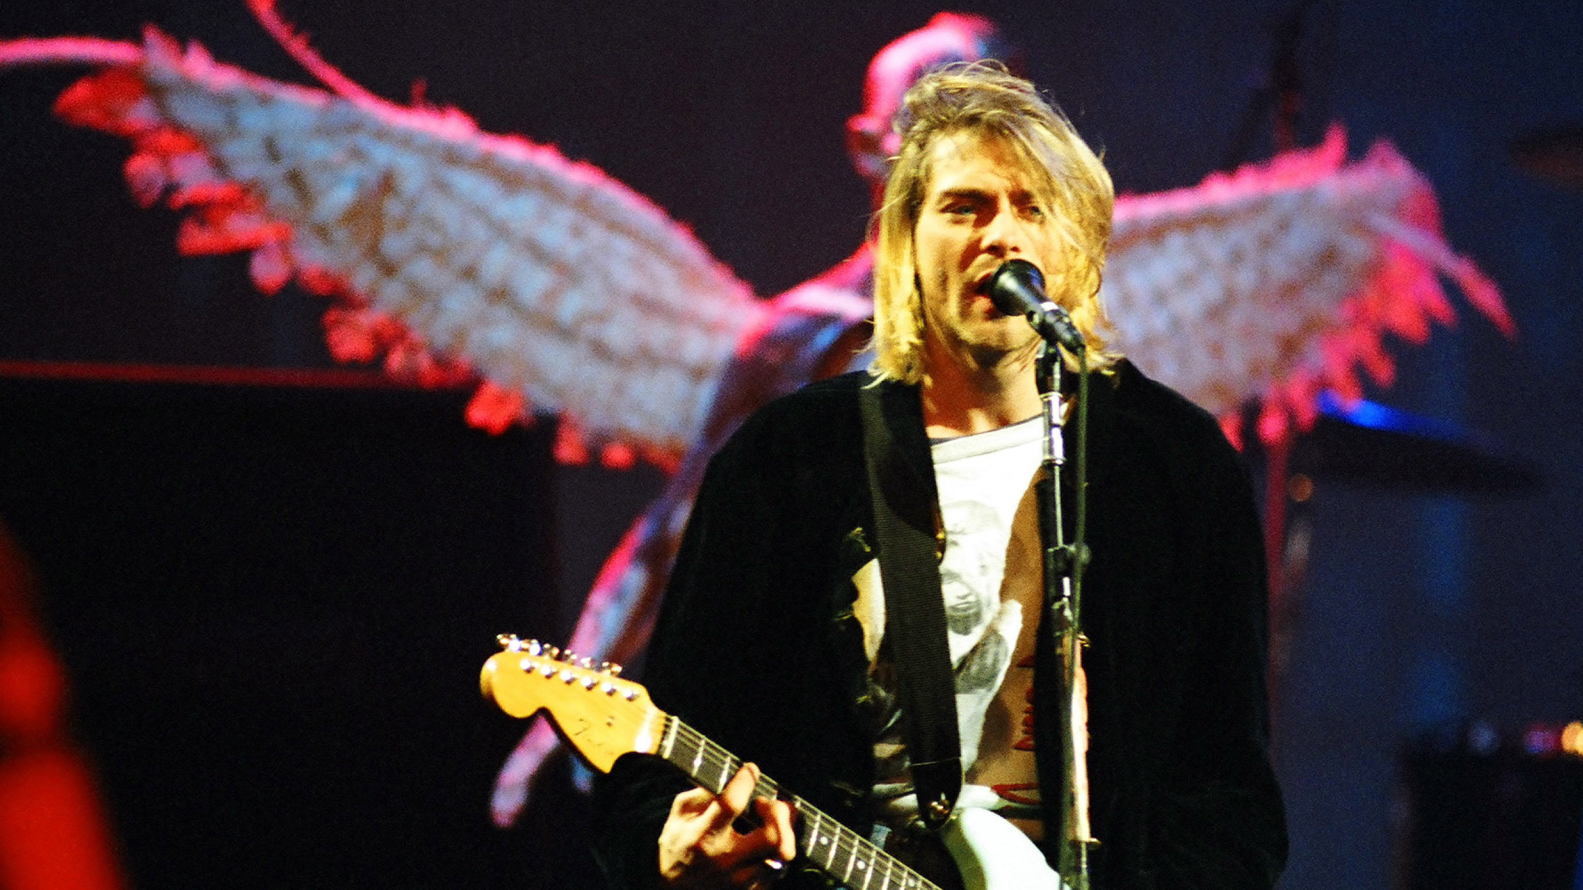 Drogas, alcohol y la frase premonitoria de Kurt Cobain antes del balazo  final: “Me odio y quiero morir” - Infobae